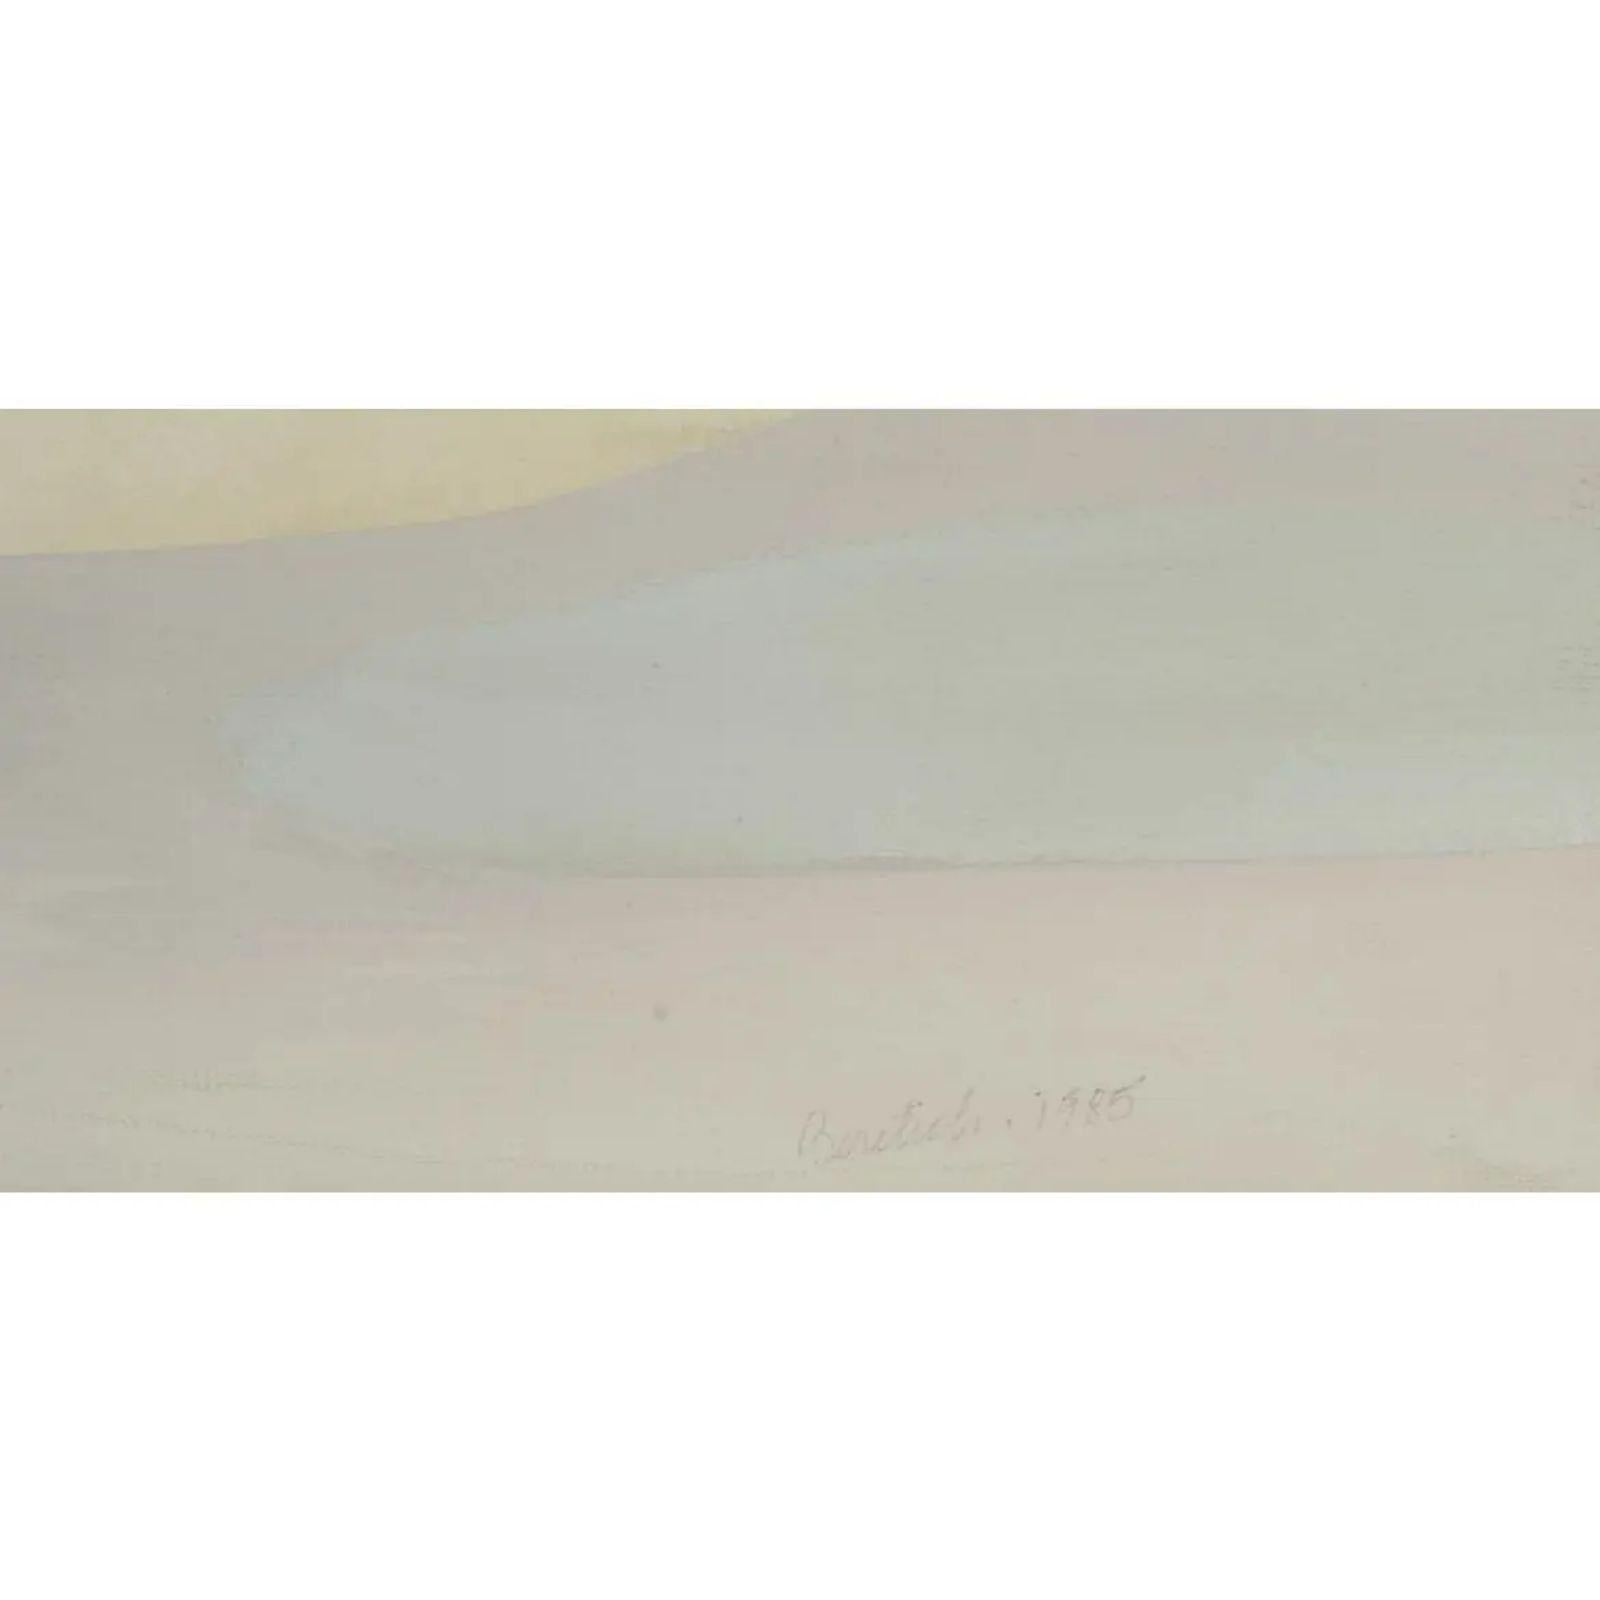 Abstrakte Malerei von Barbara Beretich (1936-2018). Es trägt den Titel Silver Wide und zeigt eine gemäßigte abstrakte Landschaft. Es ist vom Künstler signiert und wurde 1985 gemalt.

Zusätzliche Informationen: 
MATERIALIEN: Leinwand, Ölfarbe
Farbe: